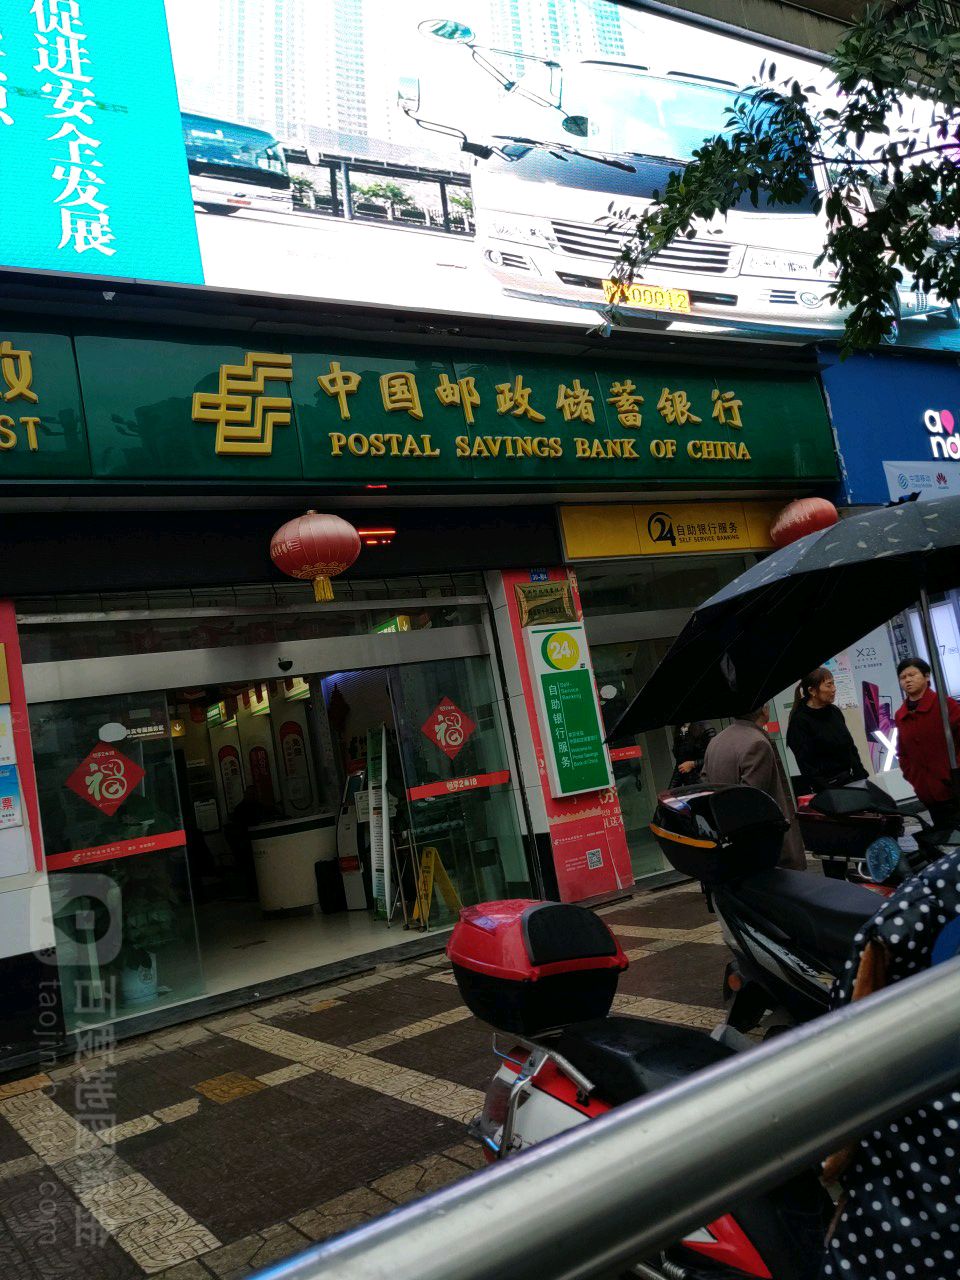 中國郵政儲蓄銀行24小時自助銀行(新平街西段營業所)